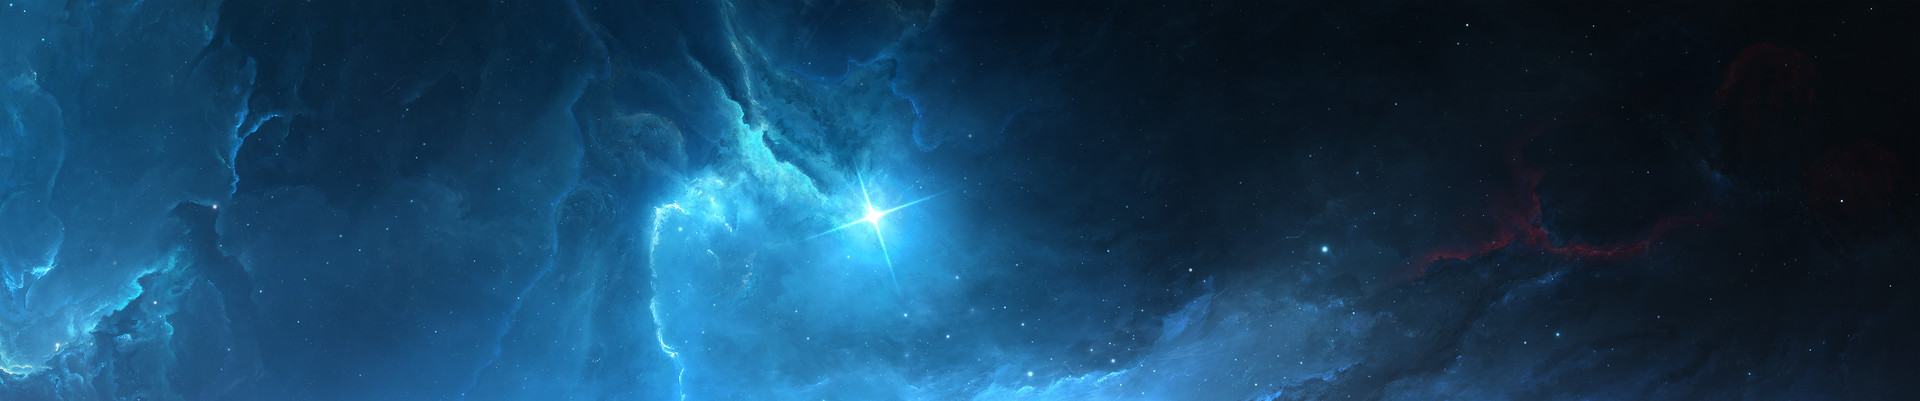 Với hình nền Atlantis Nebula Triple Monitor Wallpaper, bạn sẽ được hòa mình vào chuyến phiêu lưu vượt thời gian, khám phá vũ trụ kỳ bí và đầy thú vị. Sự kết hợp tinh tế của các gam màu sẽ làm nổi bật màn hình của bạn.